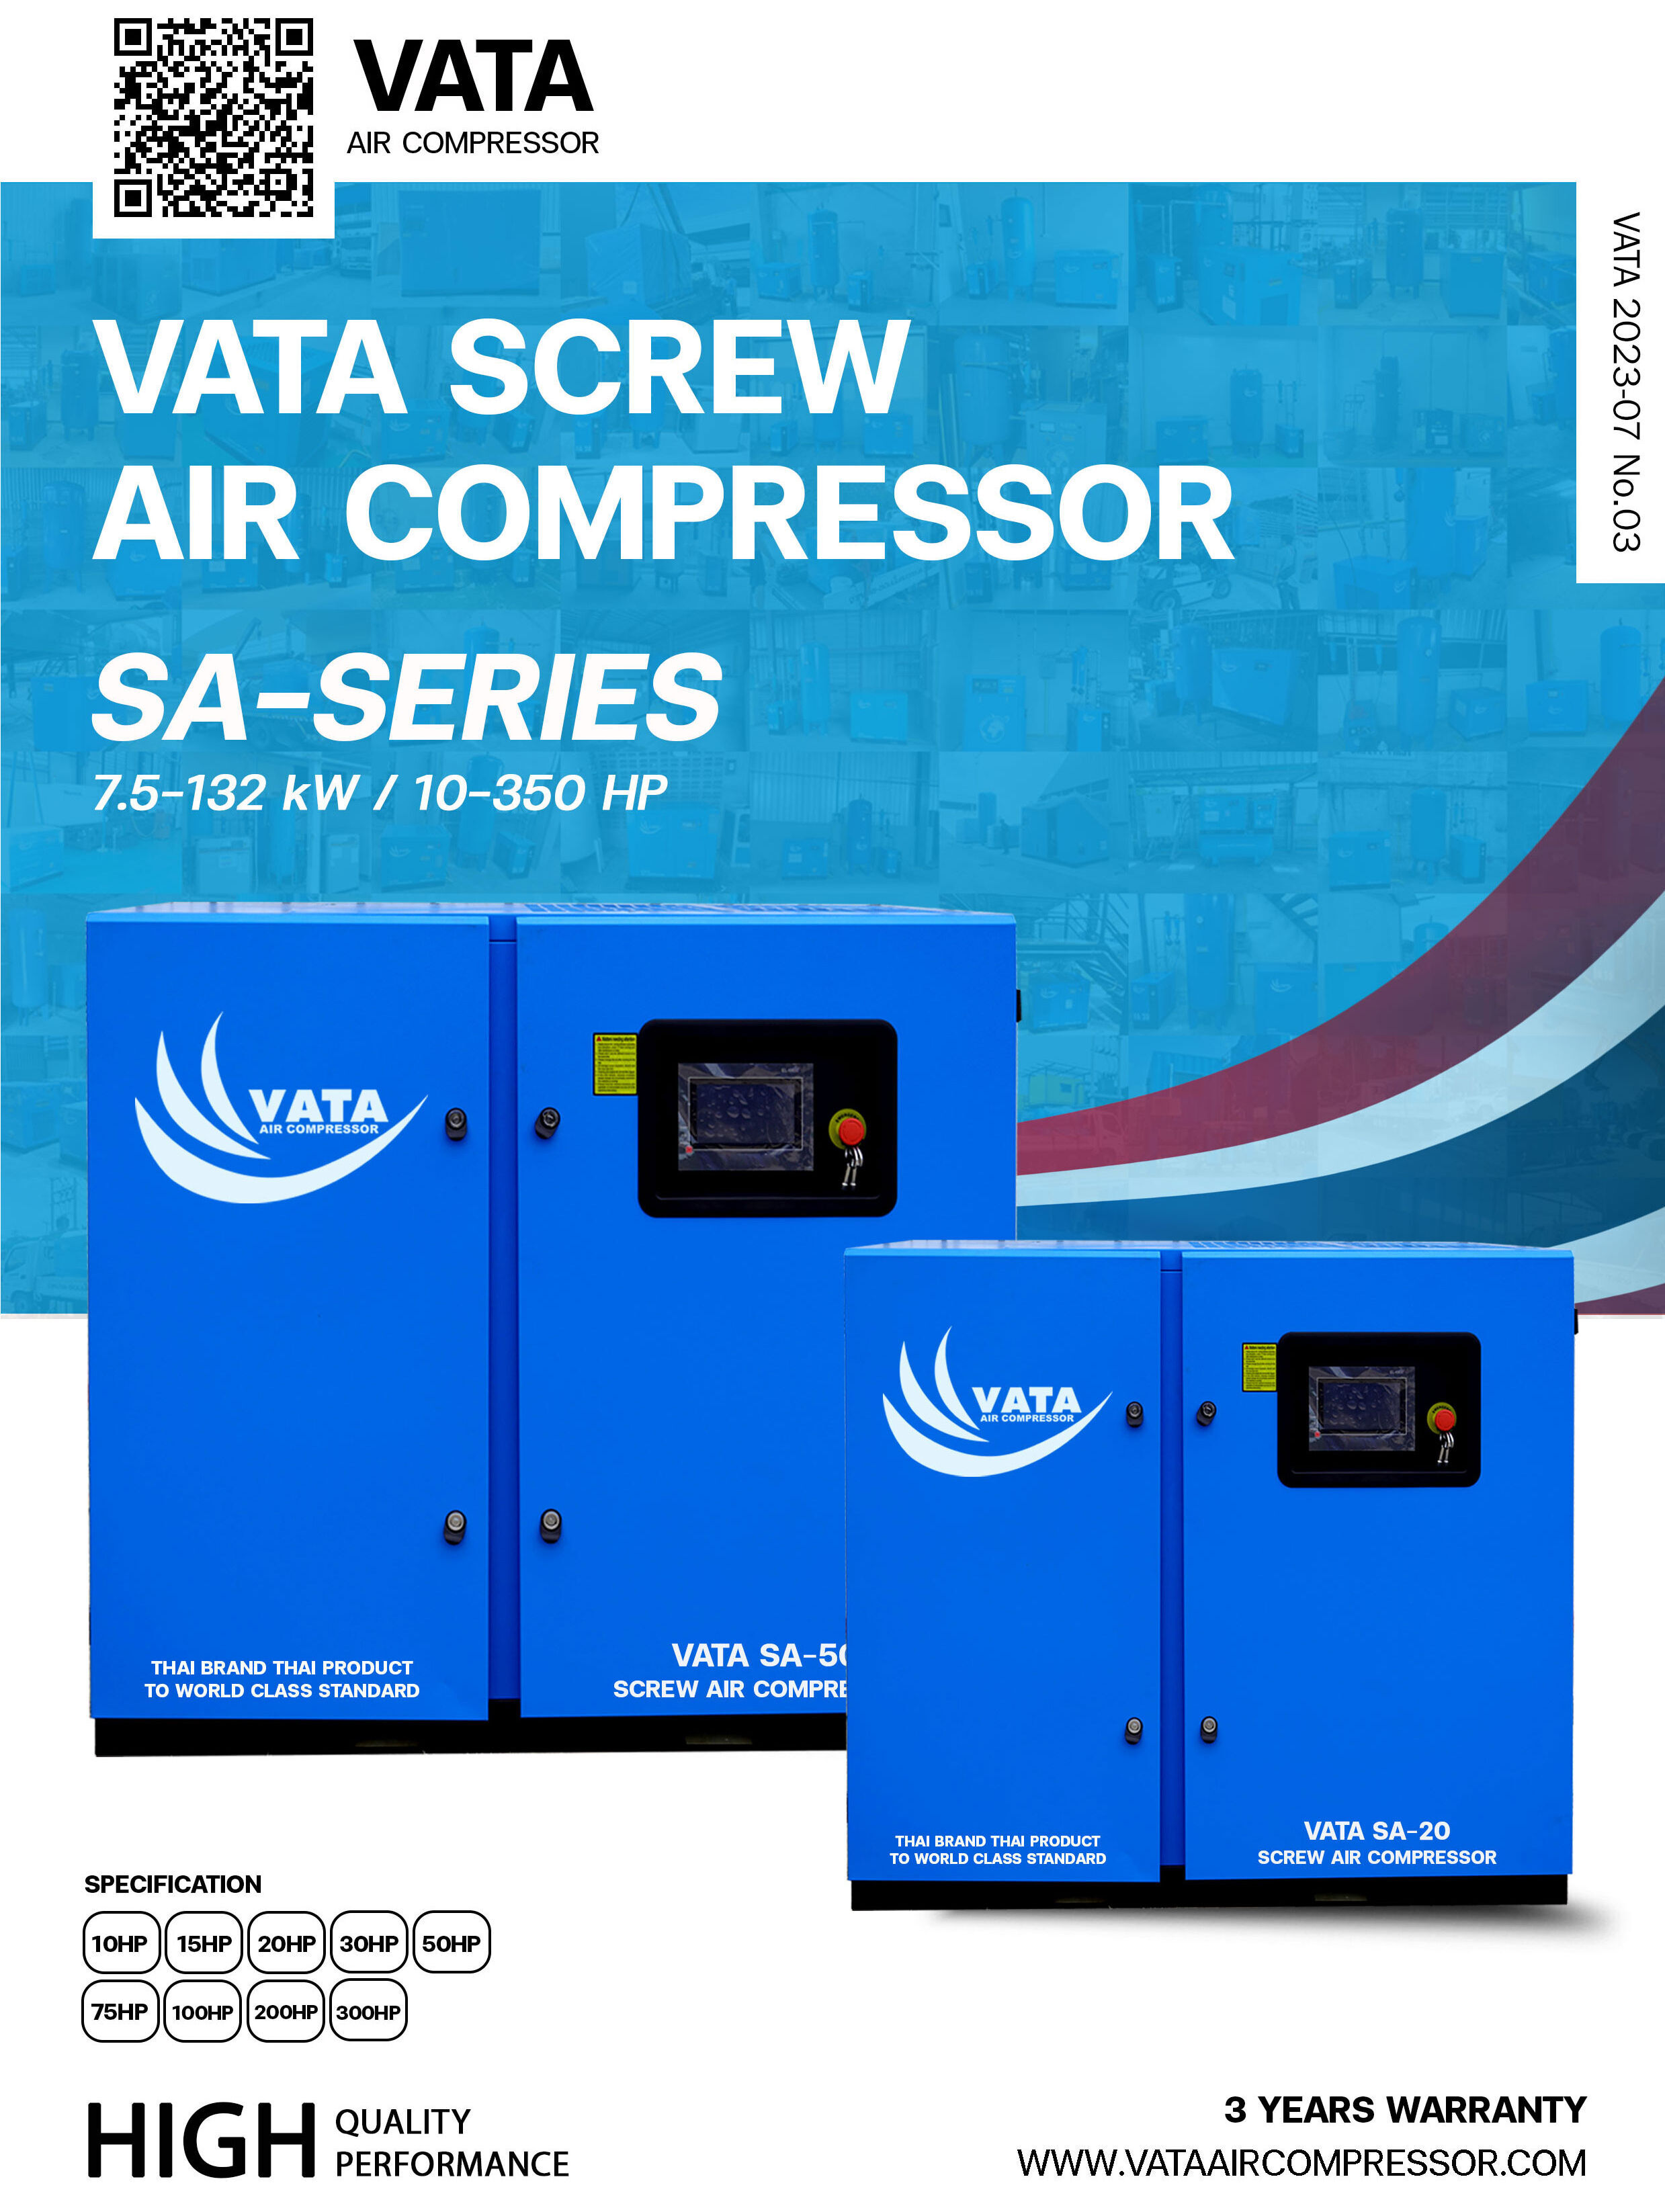 ปั๊มลมสกรู VATA AIR COMPRESSOR เครื่องอัดอากาศ ปั๊มลม ประสิทธิภาพสูง ปั๊มลมของเราเหมาะสมกับโรงงานอุตสาหกรรมทุกประเภท คุ้มค่าคุ้มราคา พร้อมติดตั้งฟรี สอบถาม โทร. 064 302 0645